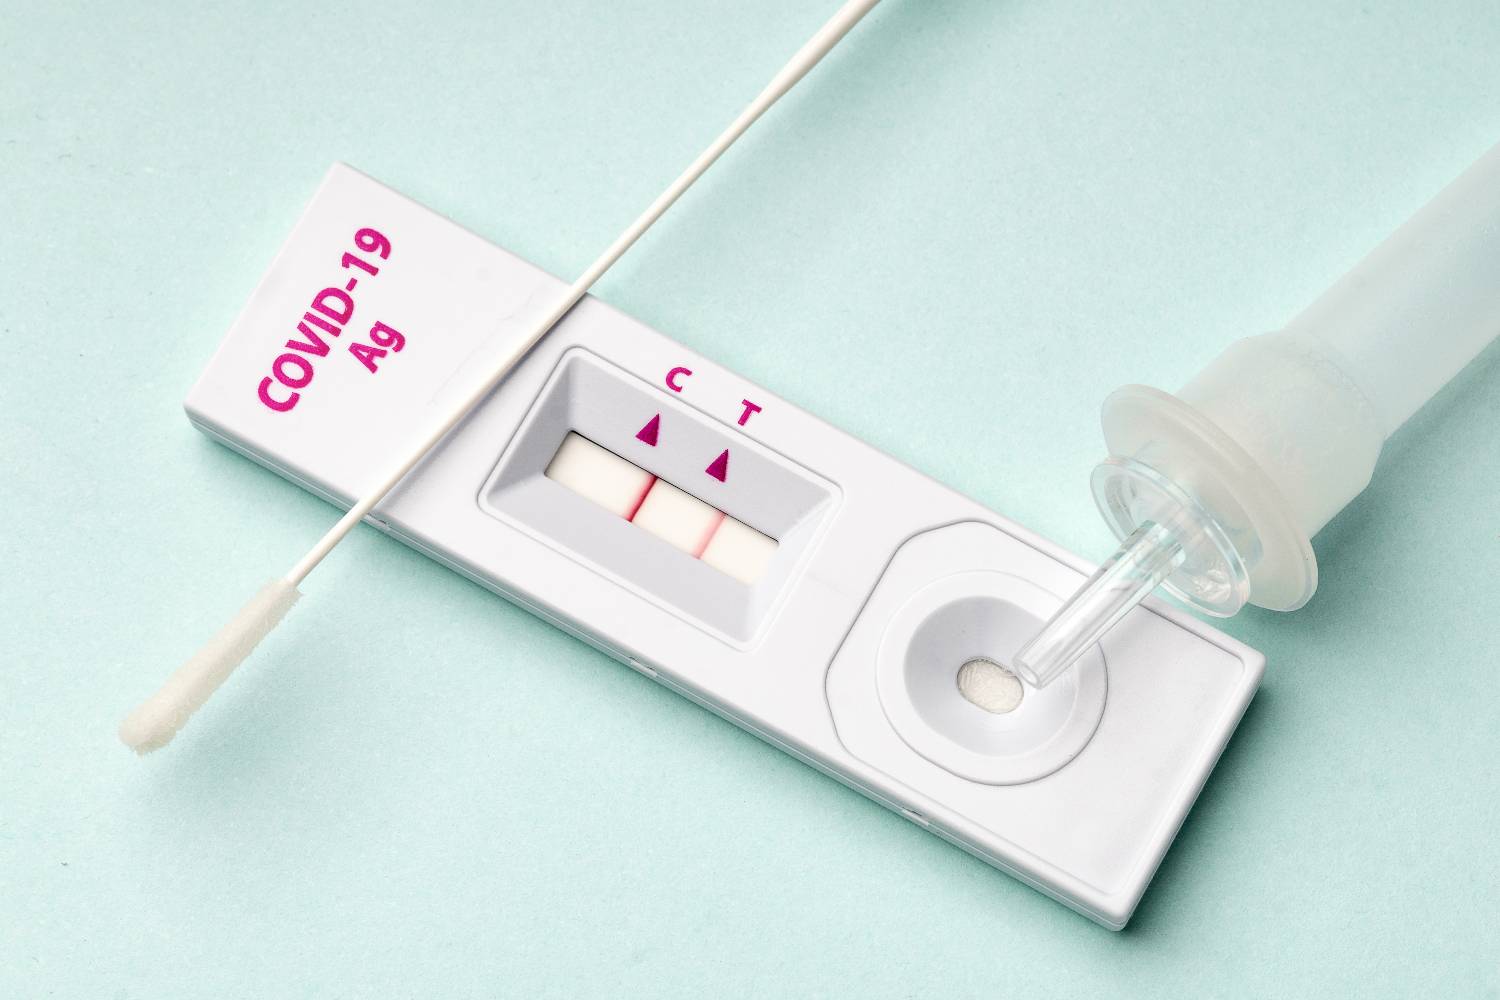 Σκέρτσος: Από τον Ιούλιο (01.07) θα εξαιρεθούν από το υποχρεωτικό self testing οι εμβολιασμένοι